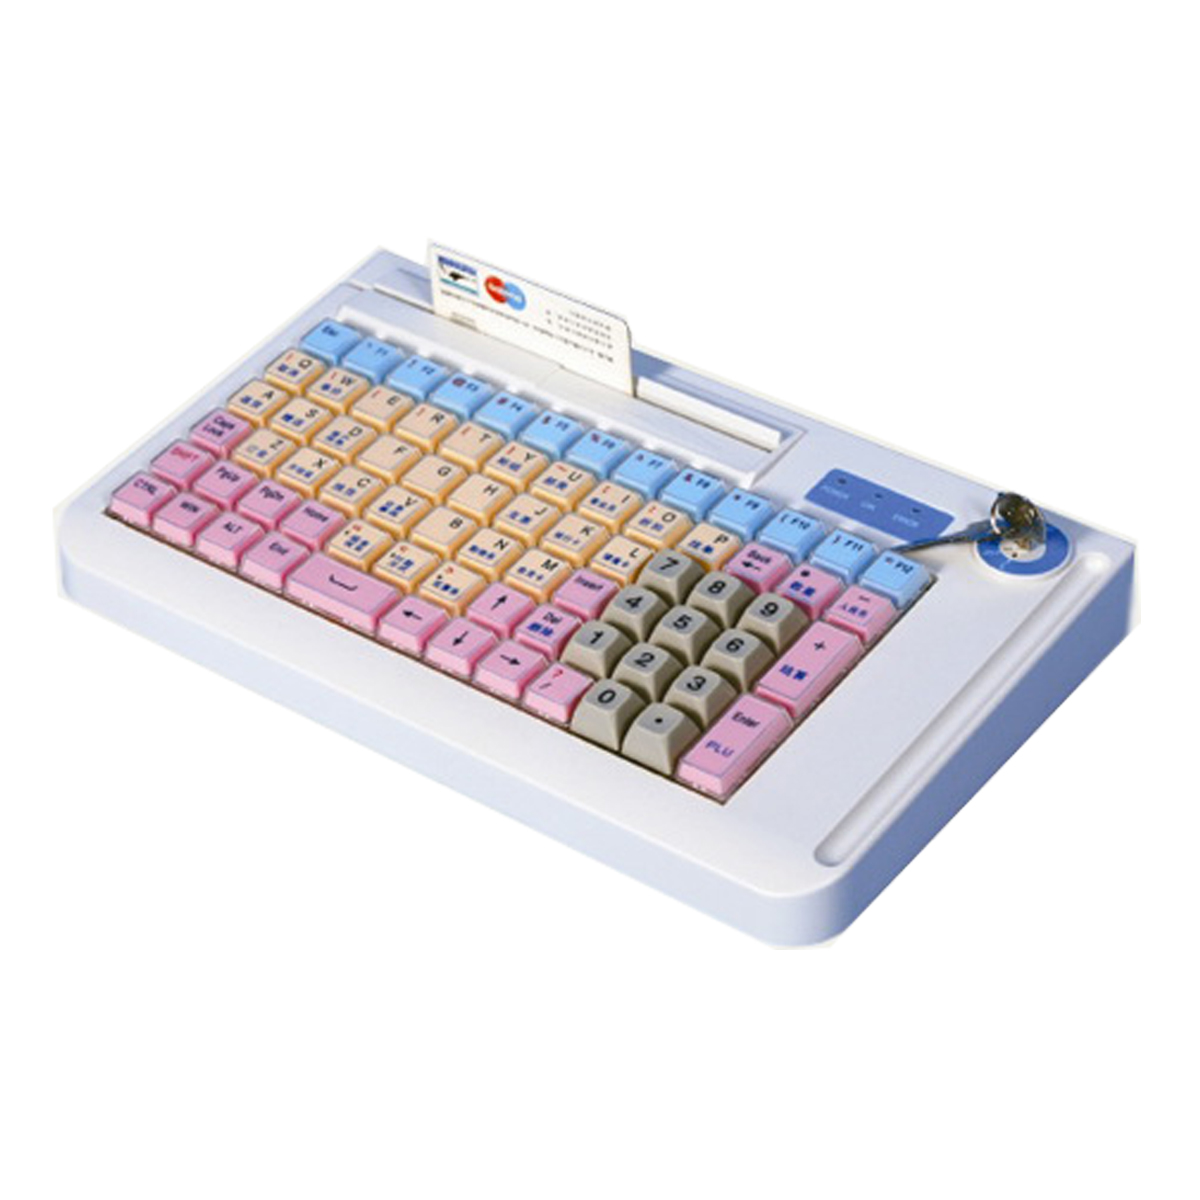 programmable keyboard HS-kp078